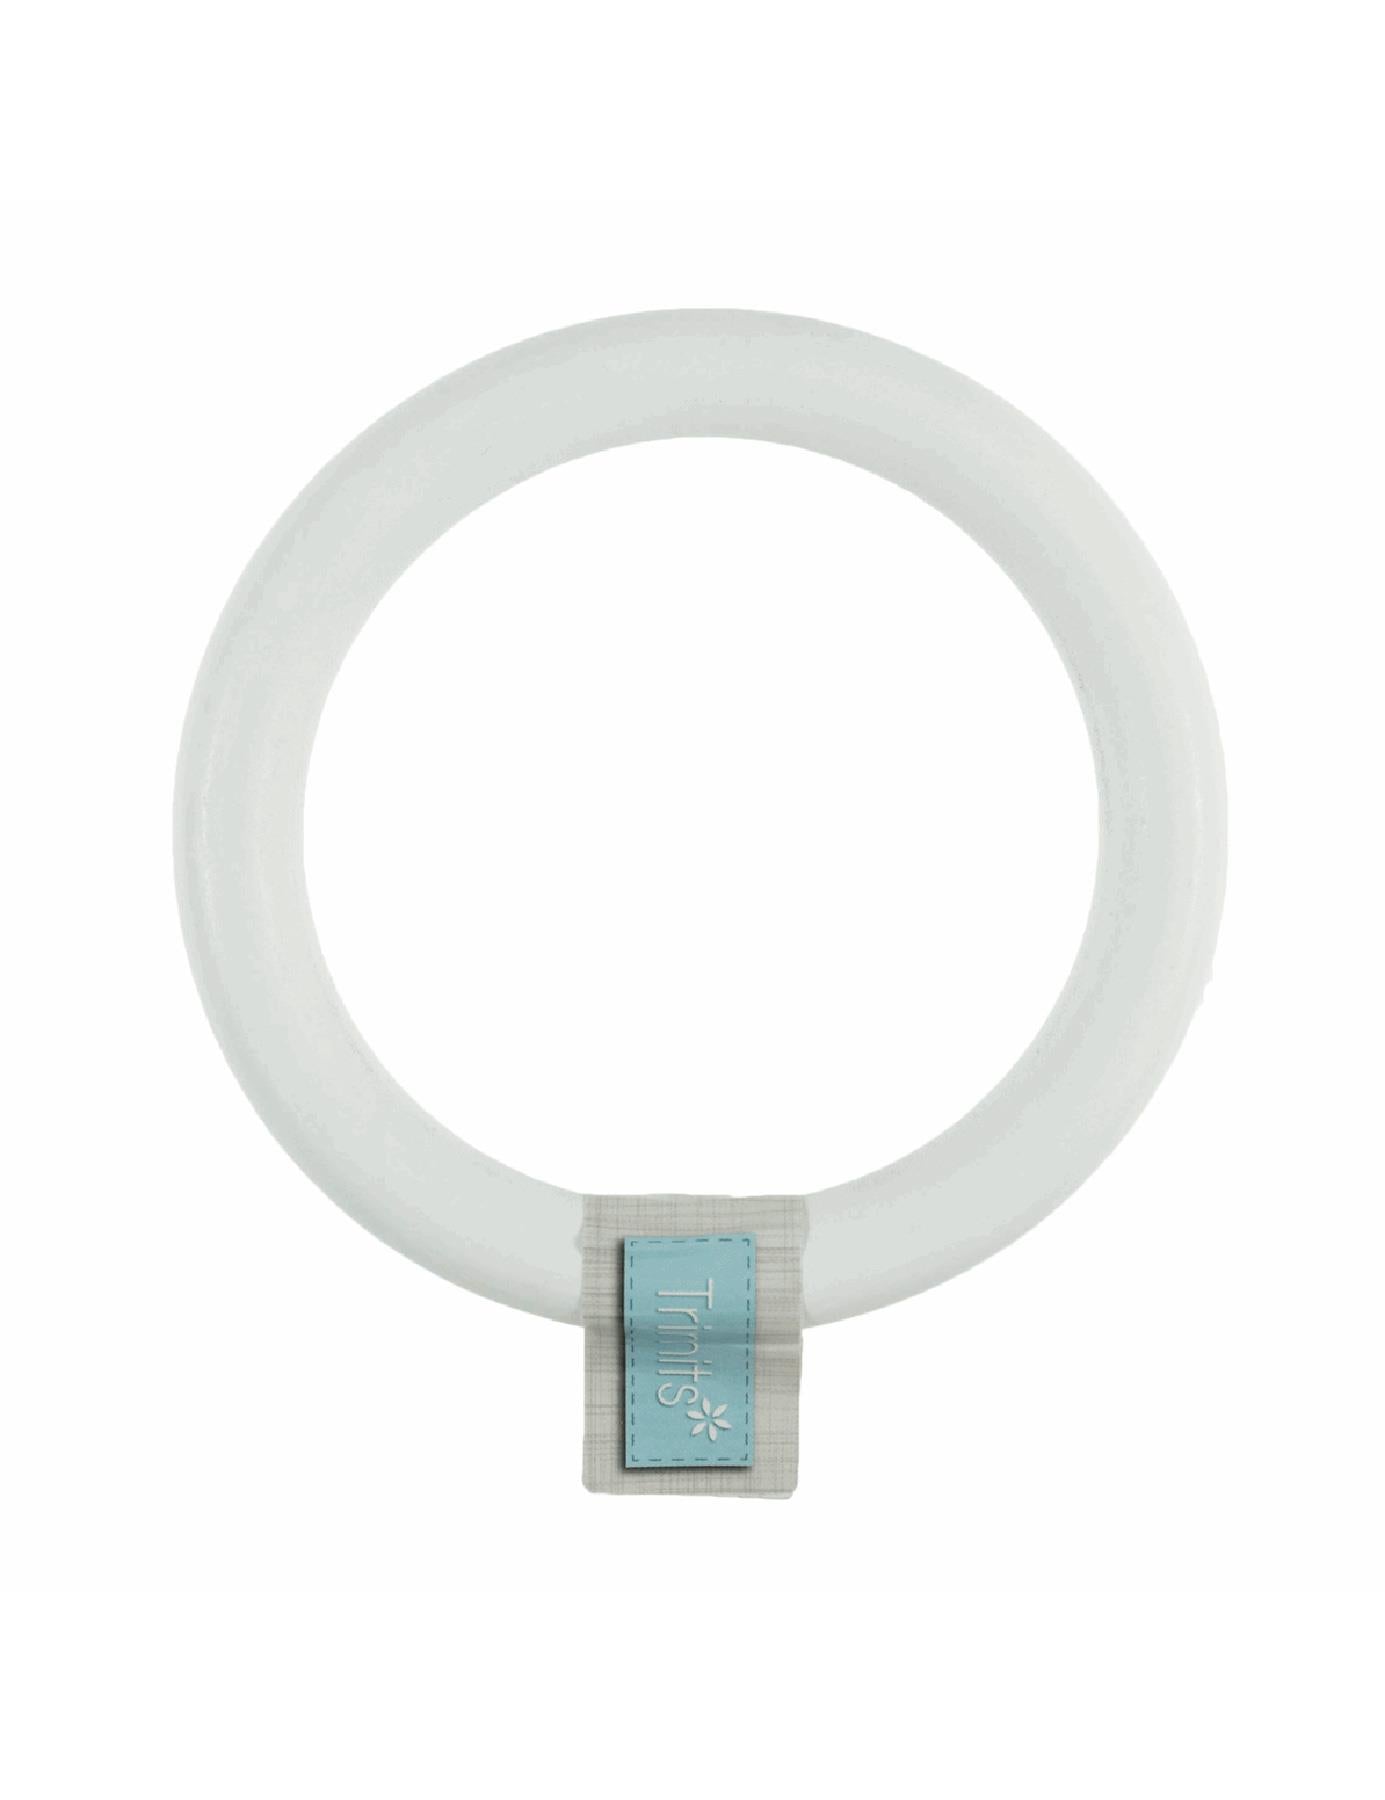 Trimits Birch Craft Ring (TRH46) white round macrame hanger - 10cm